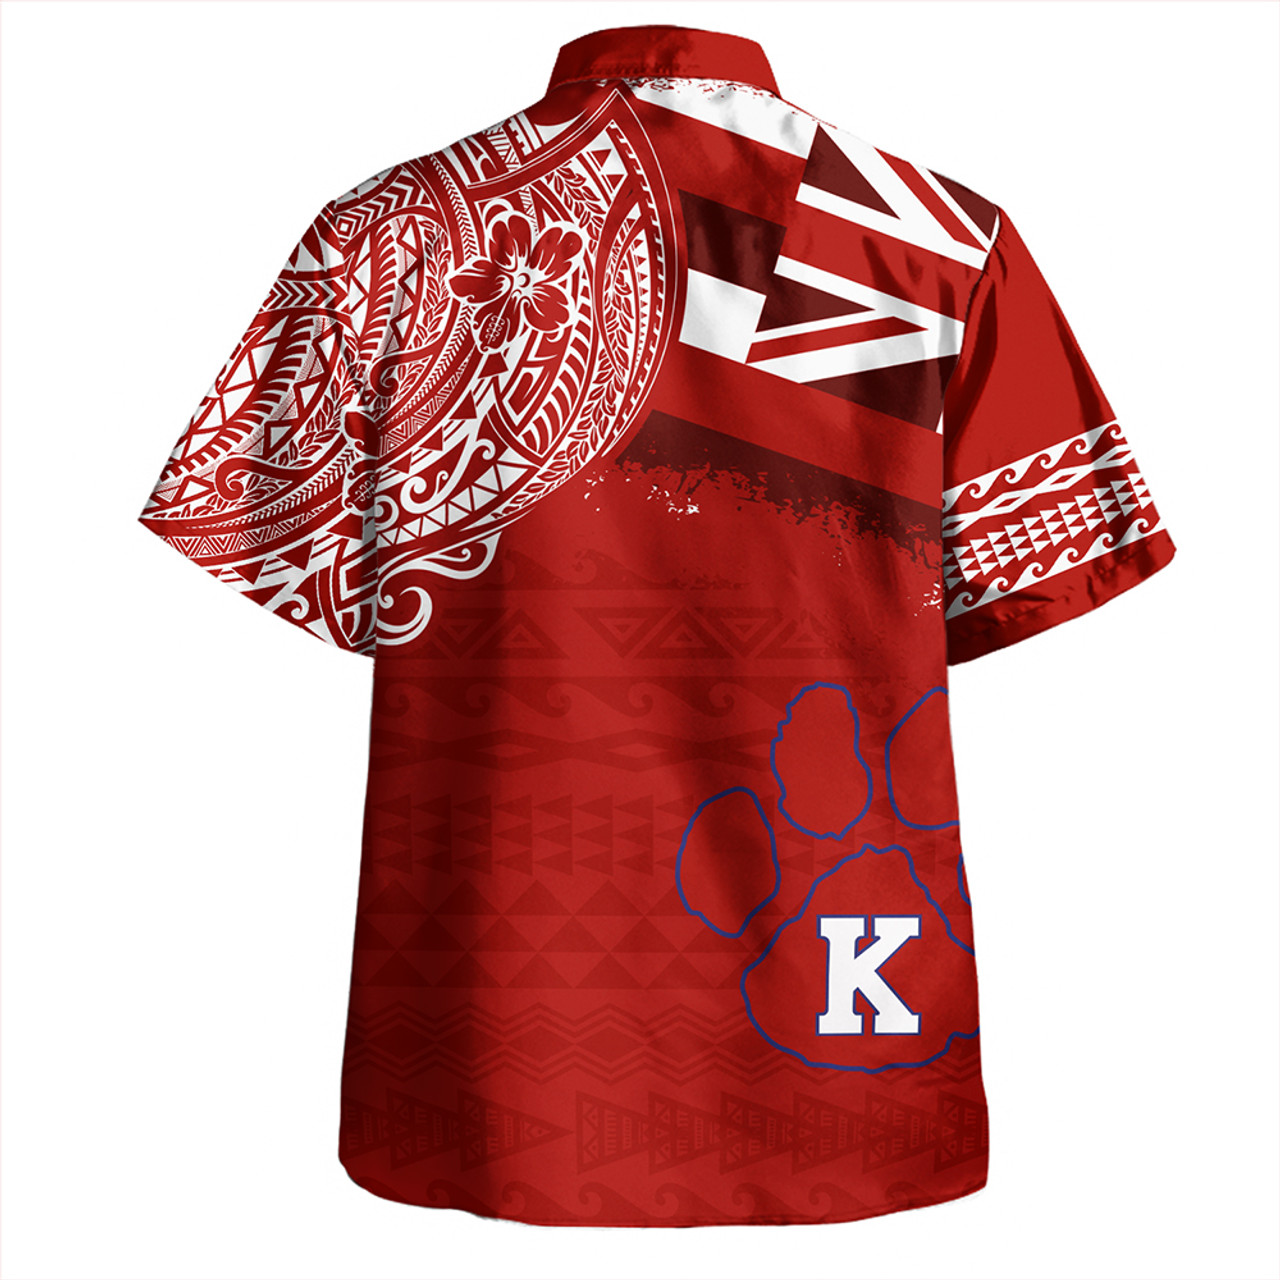 Hawaii Hawaiian Shirt Kea'au High School With Crest Style